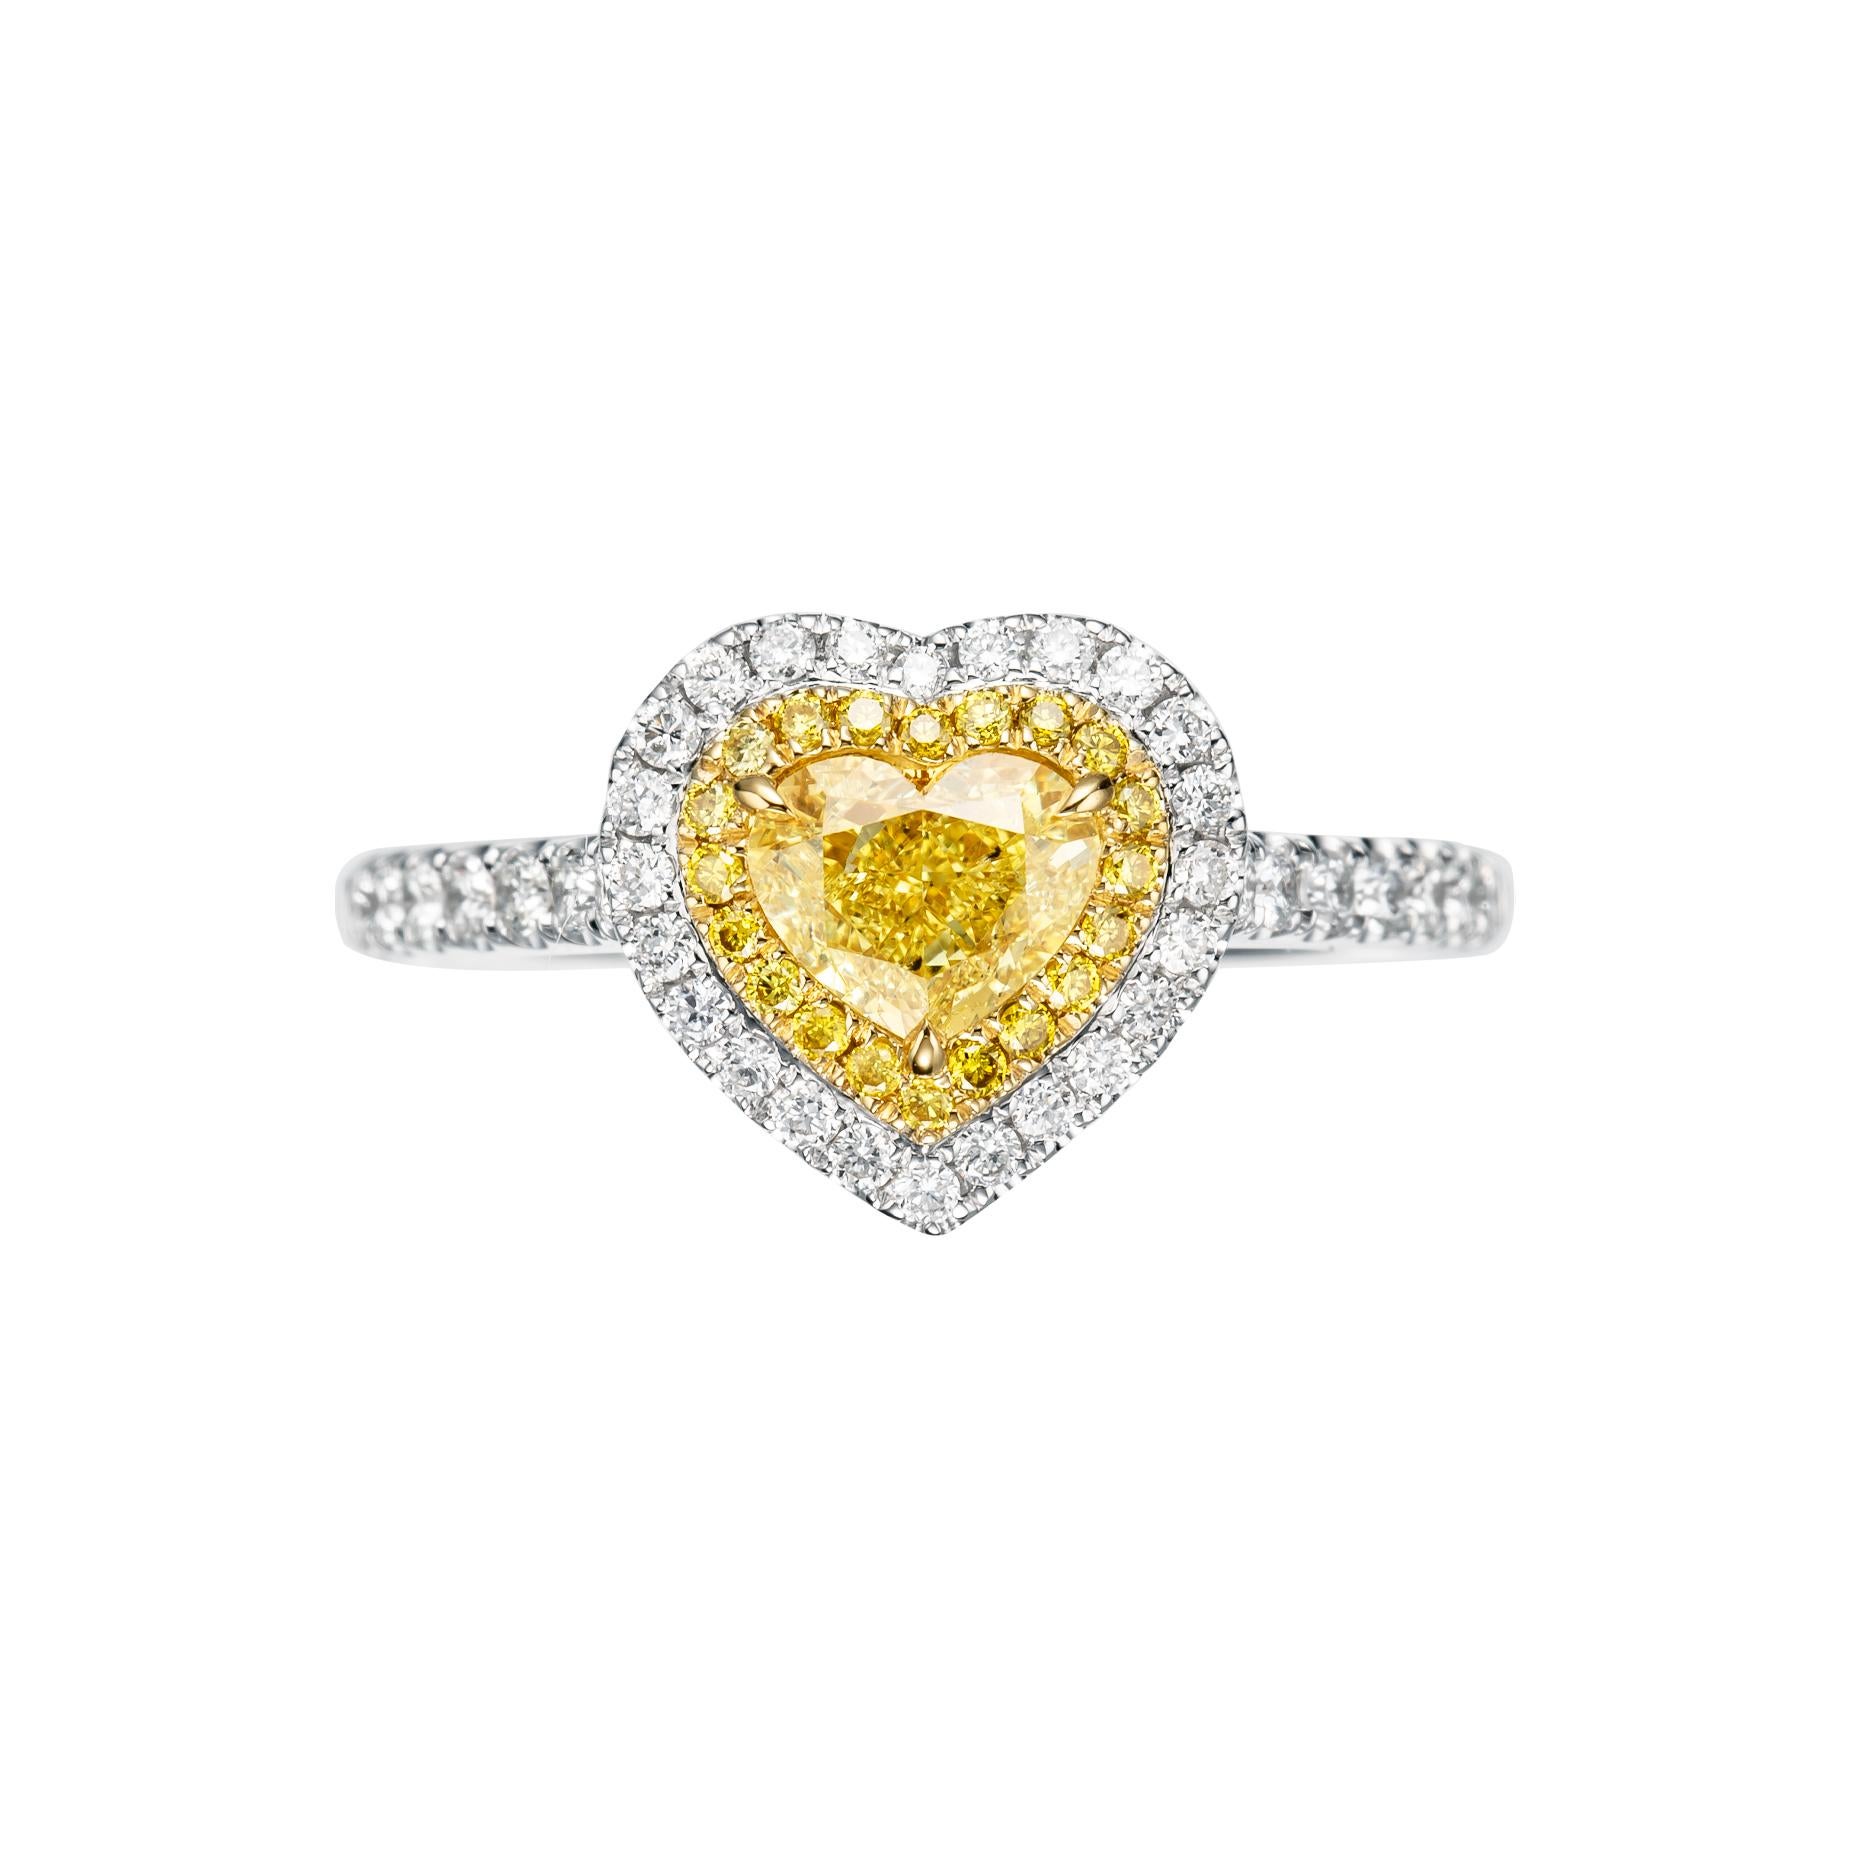 Erhöhen Sie Ihren Stil und Ihre Eleganz mit unserem Solitärring mit 0,73 ct. intensivem gelben Diamanten aus glänzendem 18-karätigem Gold, einem wahren Meisterwerk, das Luxus und Raffinesse ausstrahlt.

Das Herzstück dieses atemberaubenden Rings ist